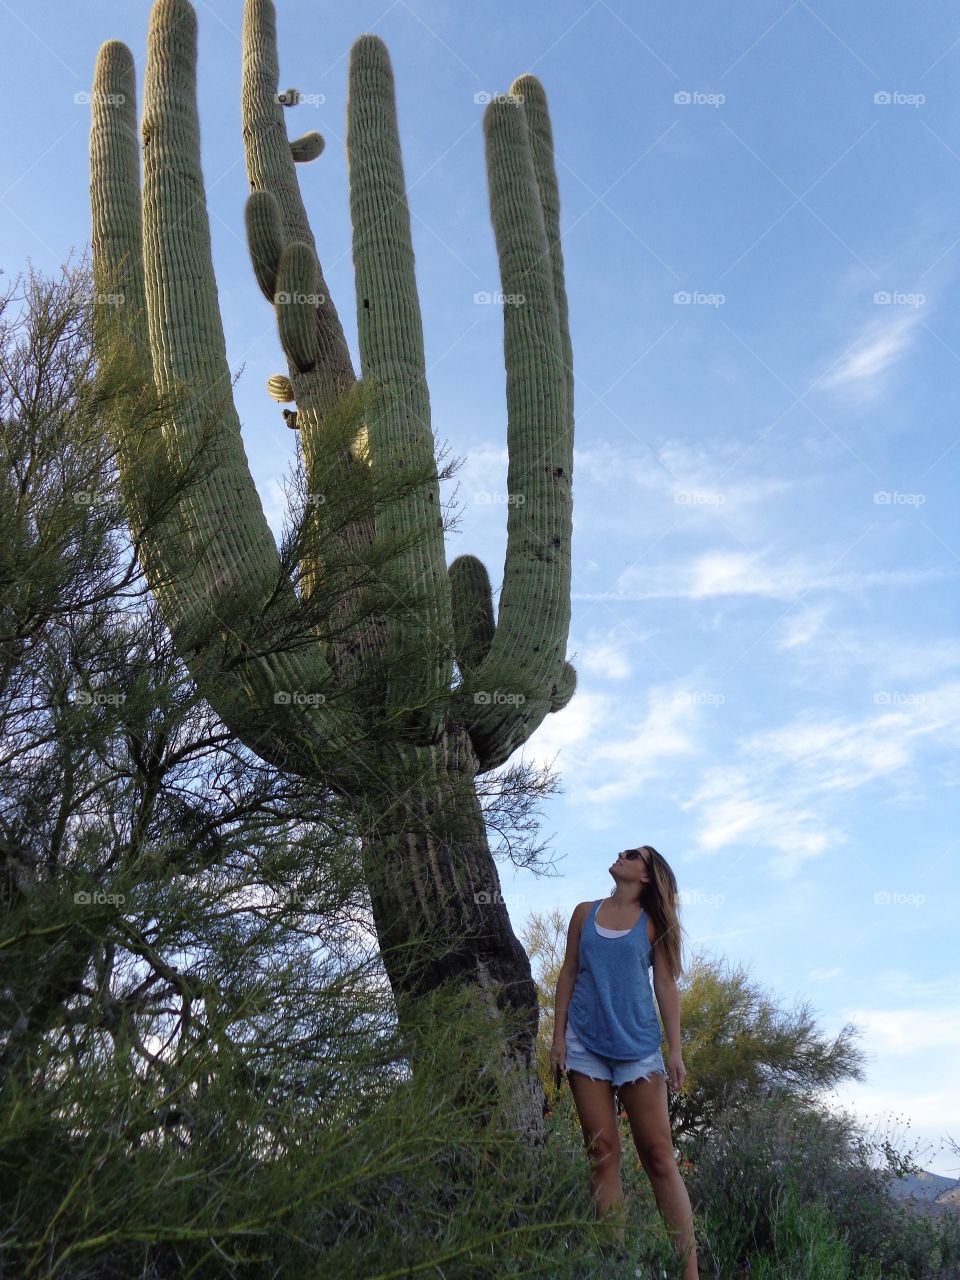 AZ. Giant cactus